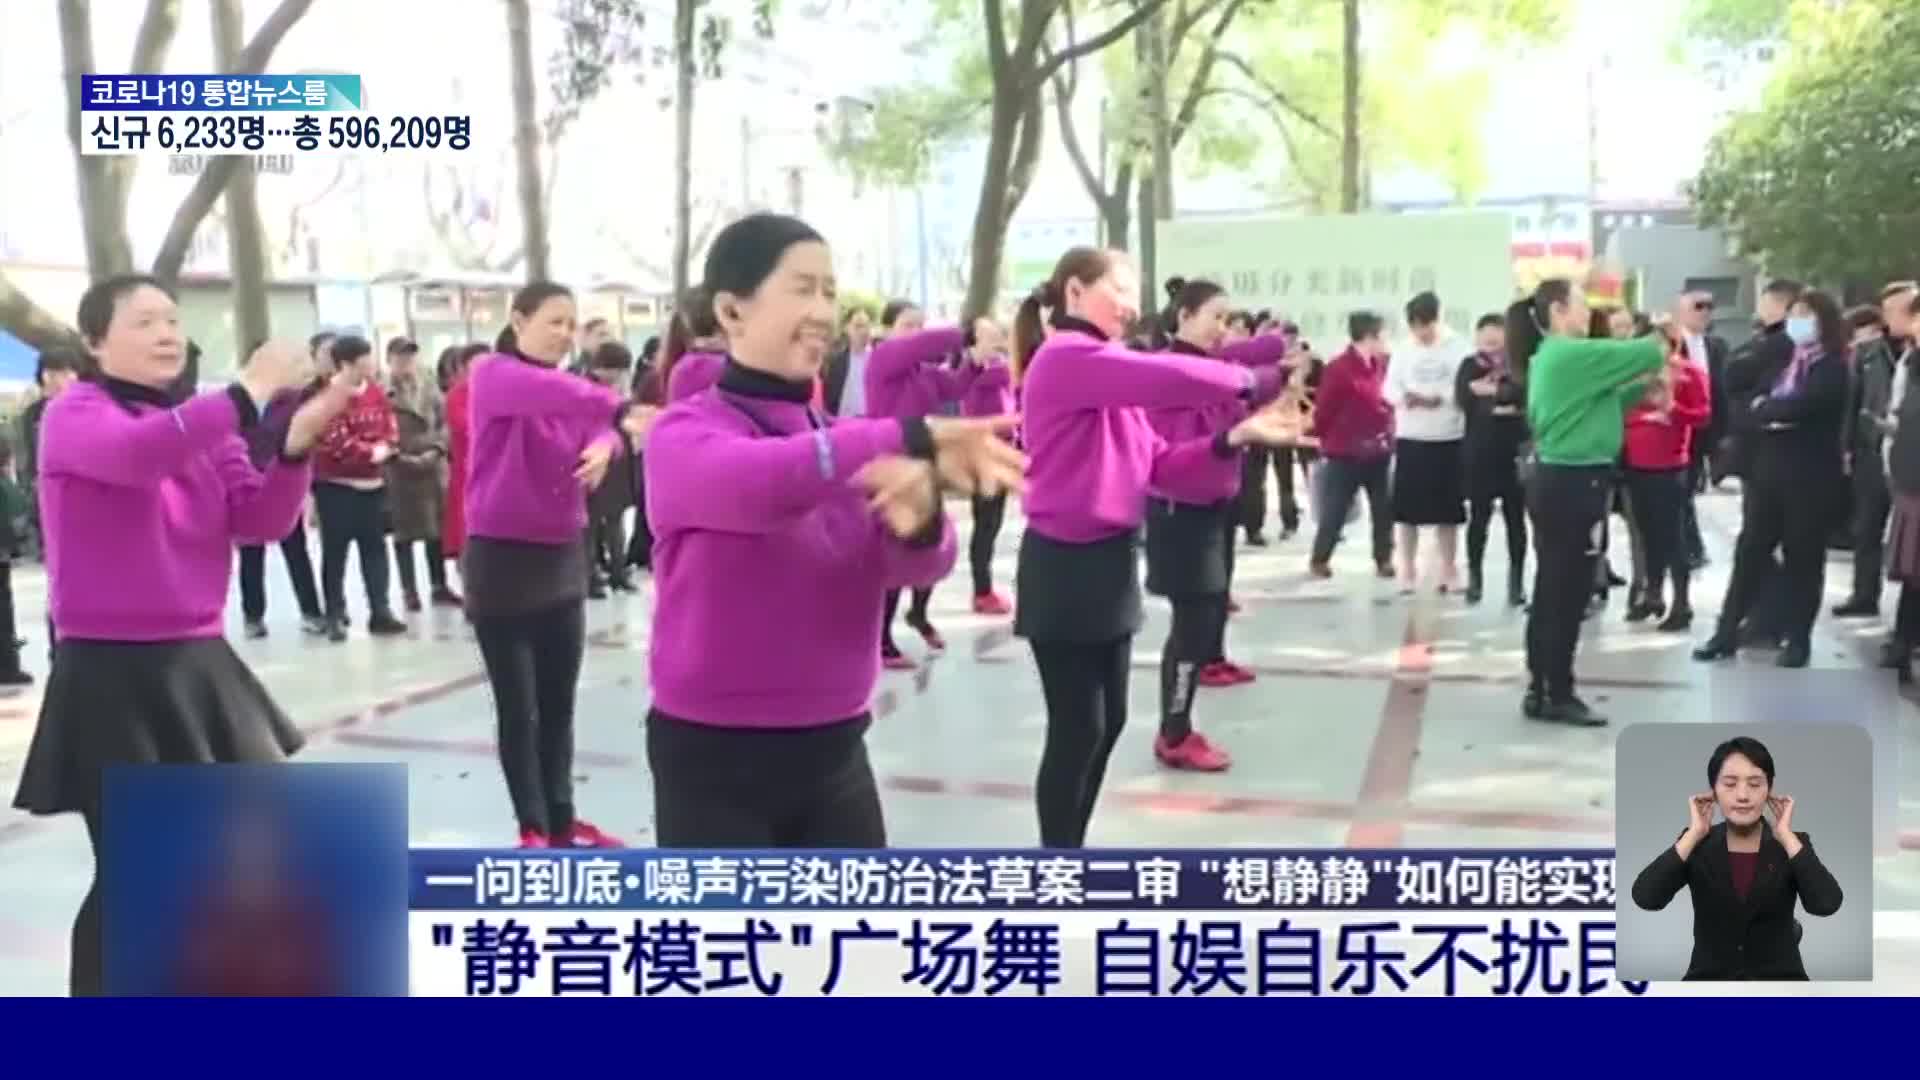 중국, 광장 춤 소음 공해 규정 어기면 벌금 수백만 원 물어야